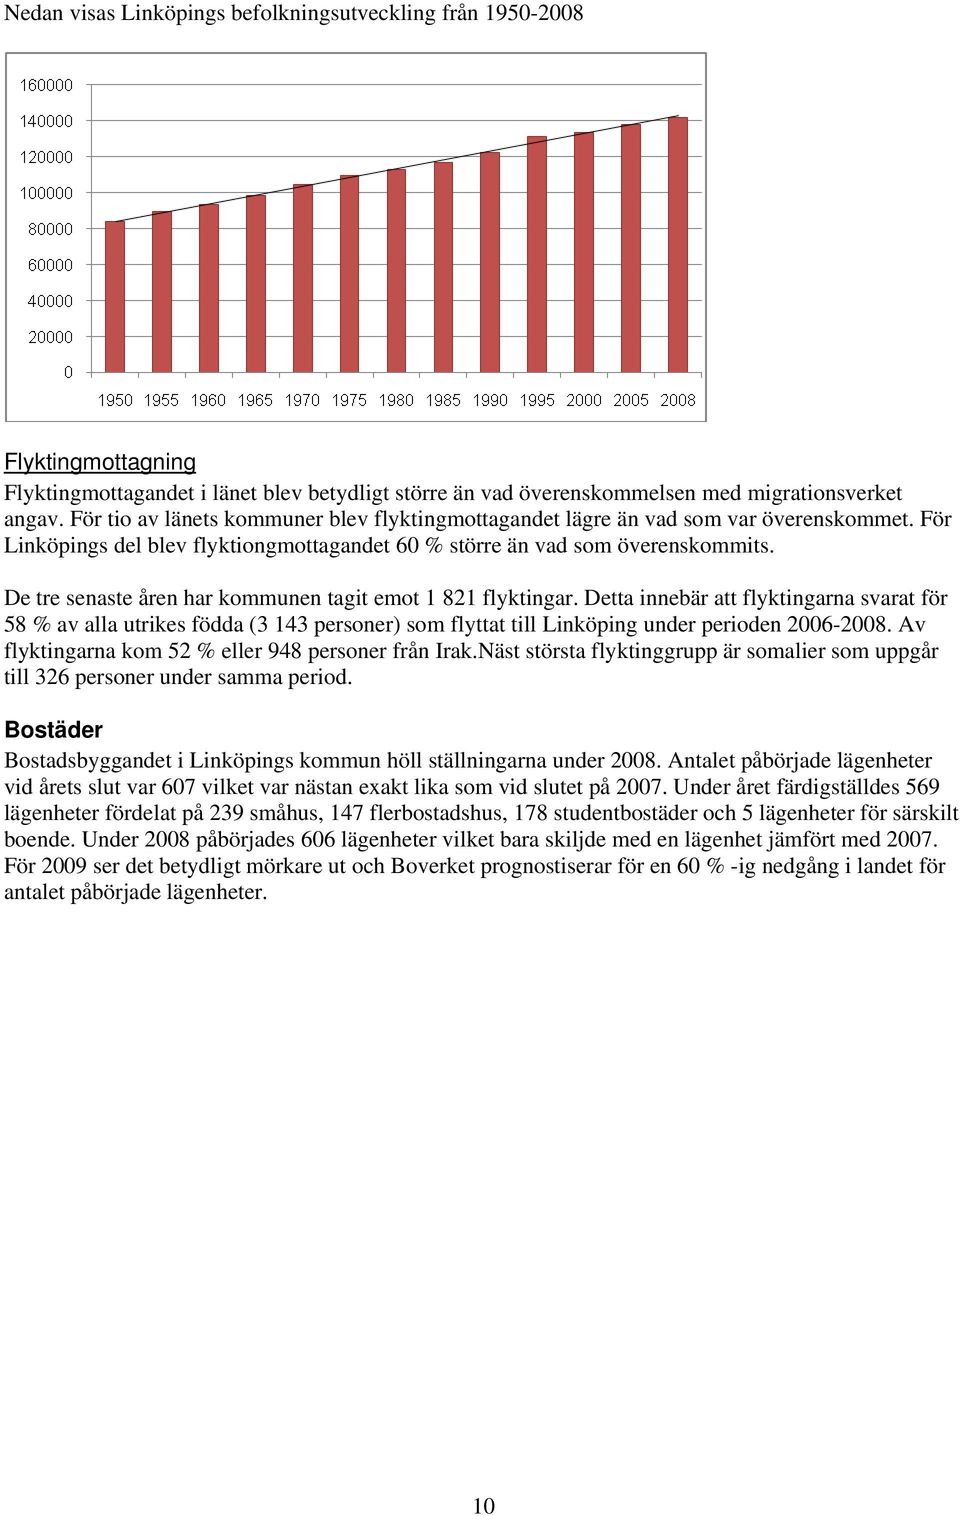 De tre senaste åren har kommunen tagit emot 1 821 flyktingar. Detta innebär att flyktingarna svarat för 58 % av alla utrikes födda (3 143 personer) som flyttat till Linköping under perioden 2006-2008.